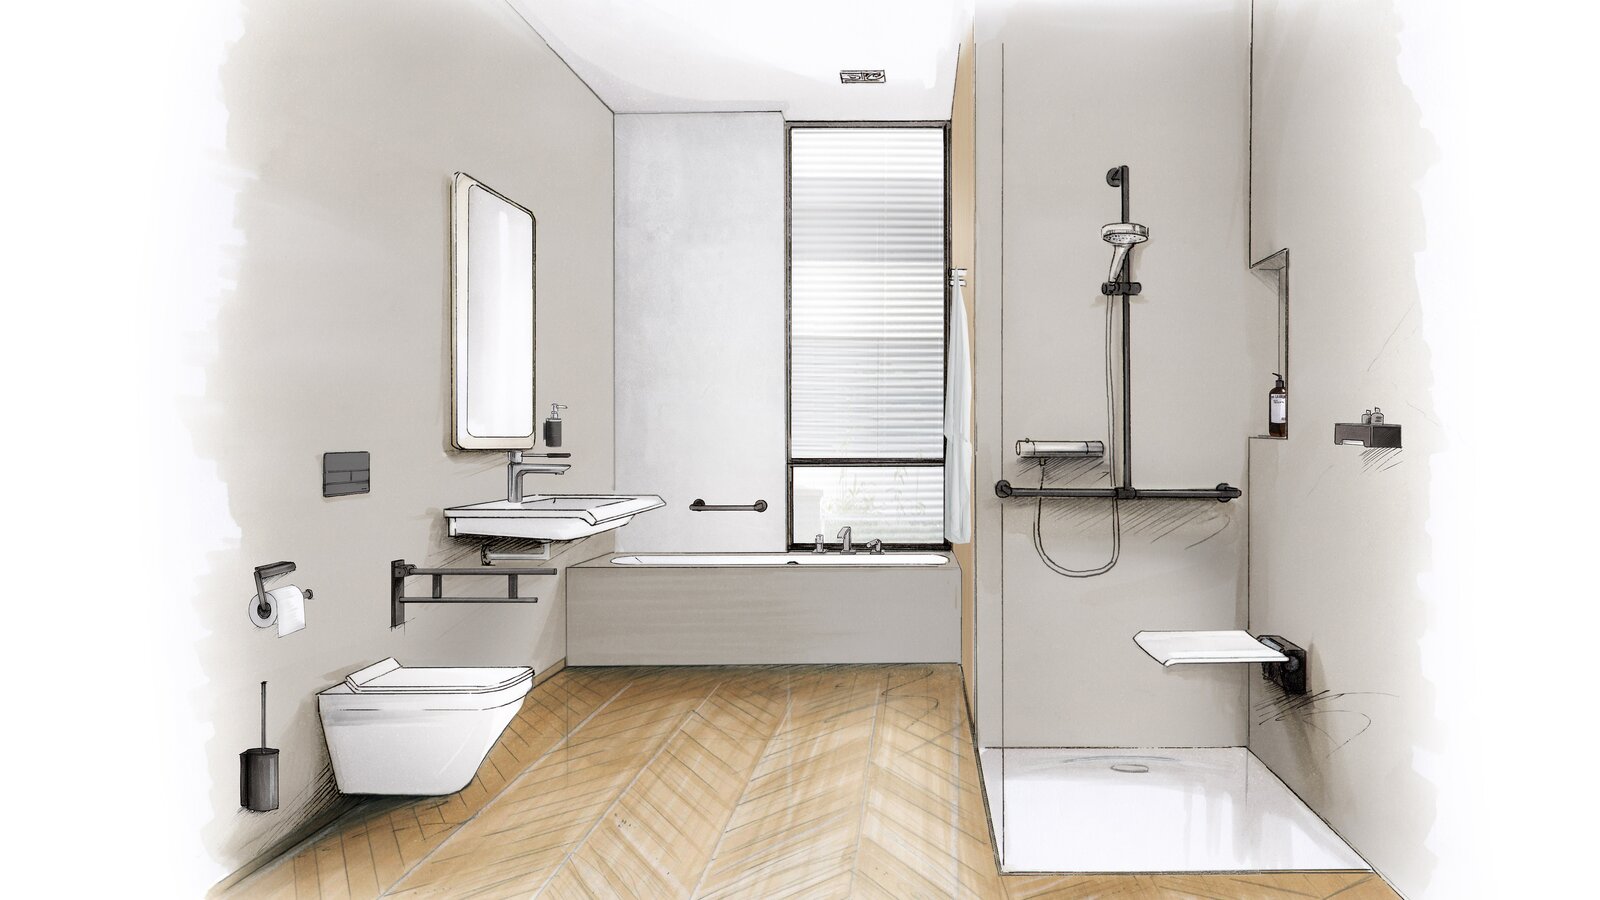 Skizze eines barrierefreien Bads mit Waschplatz, Duschbereich und WC ausgestattet mit HEWI System 900 in Schwarz